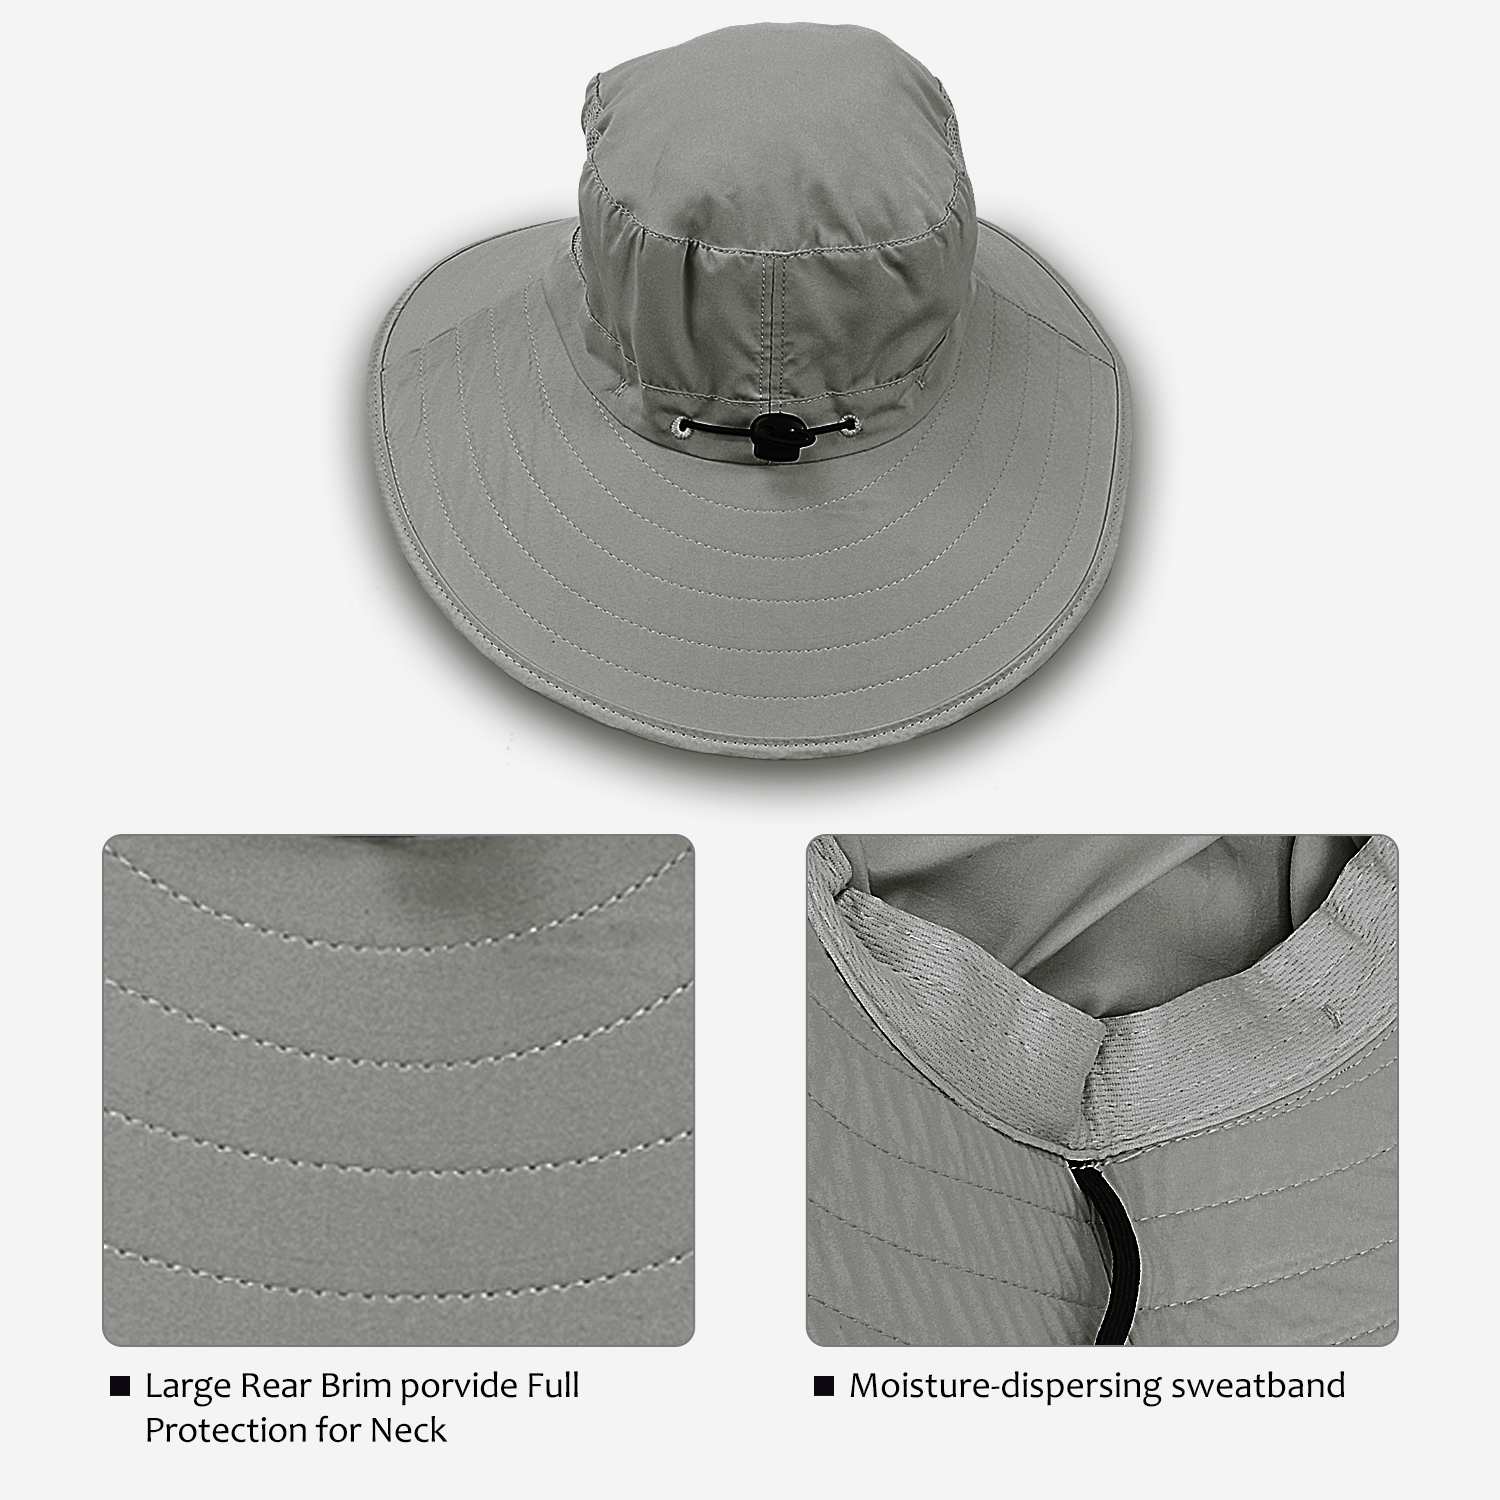 Solaris Women's Sun Hats Neck Flap Large Brim UV Protection Foldable  Fishing Hiking Cap Tan